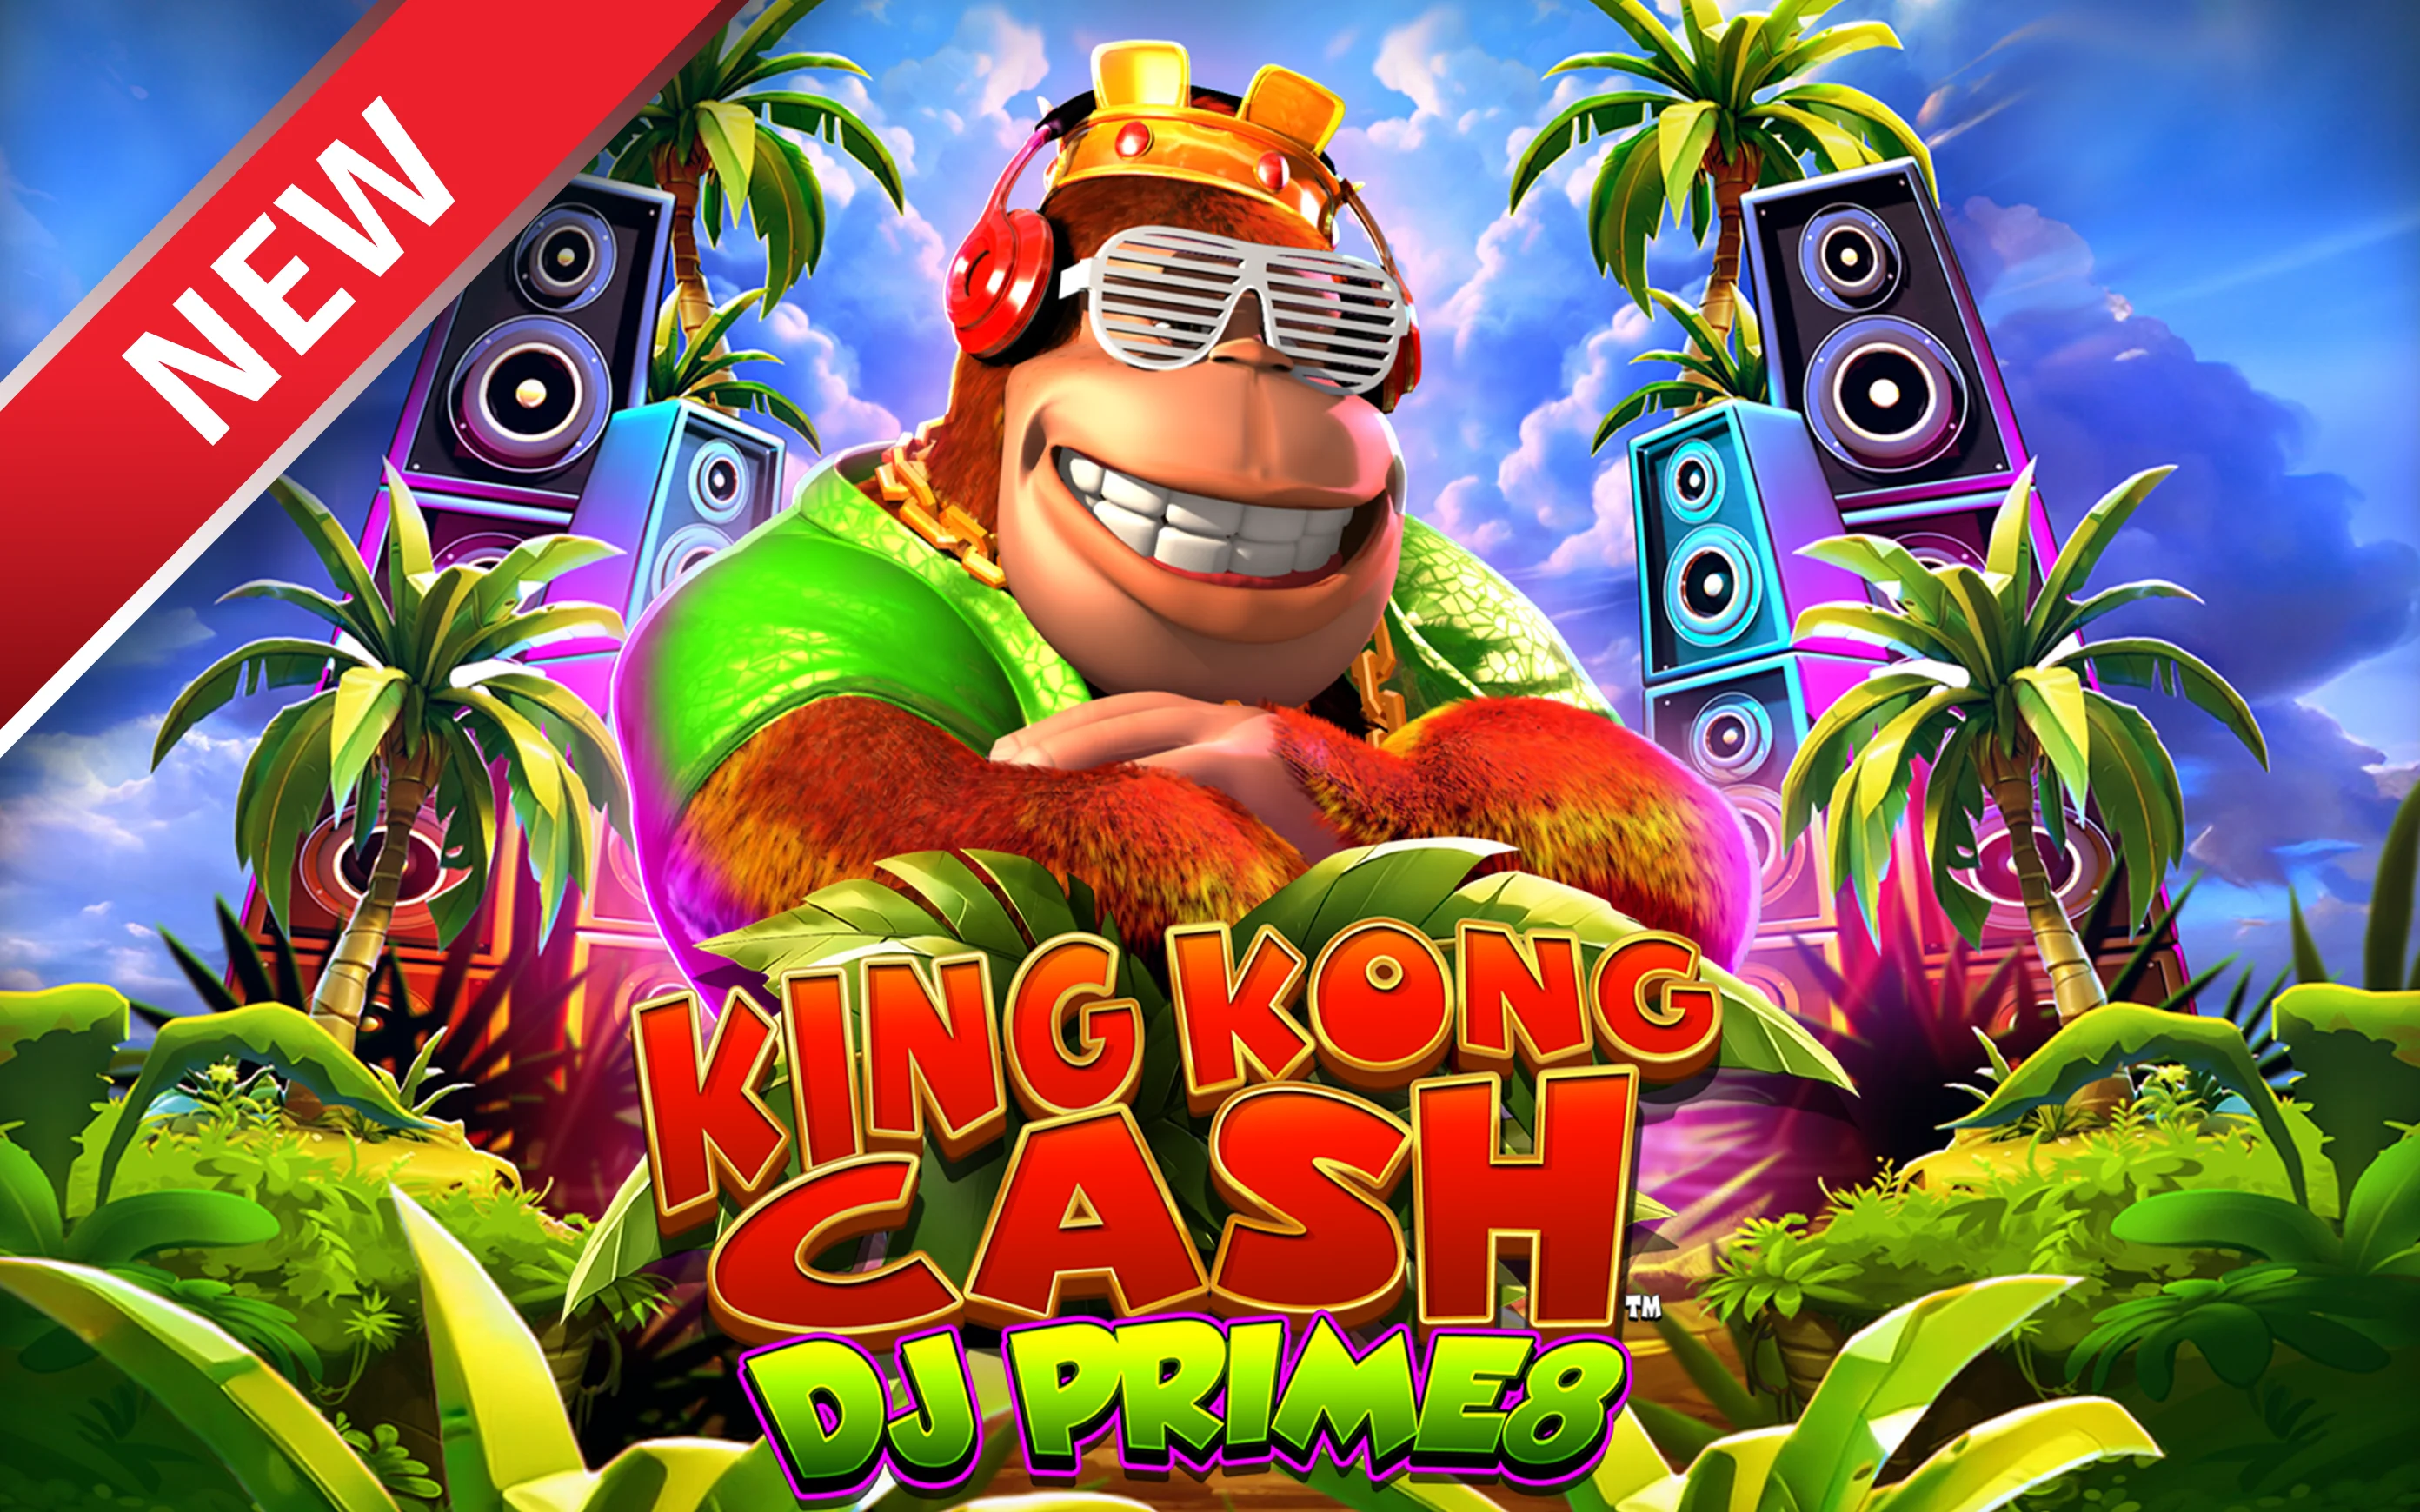 Chơi King Kong Cash DJ Prime8 trên sòng bạc trực tuyến Starcasino.be